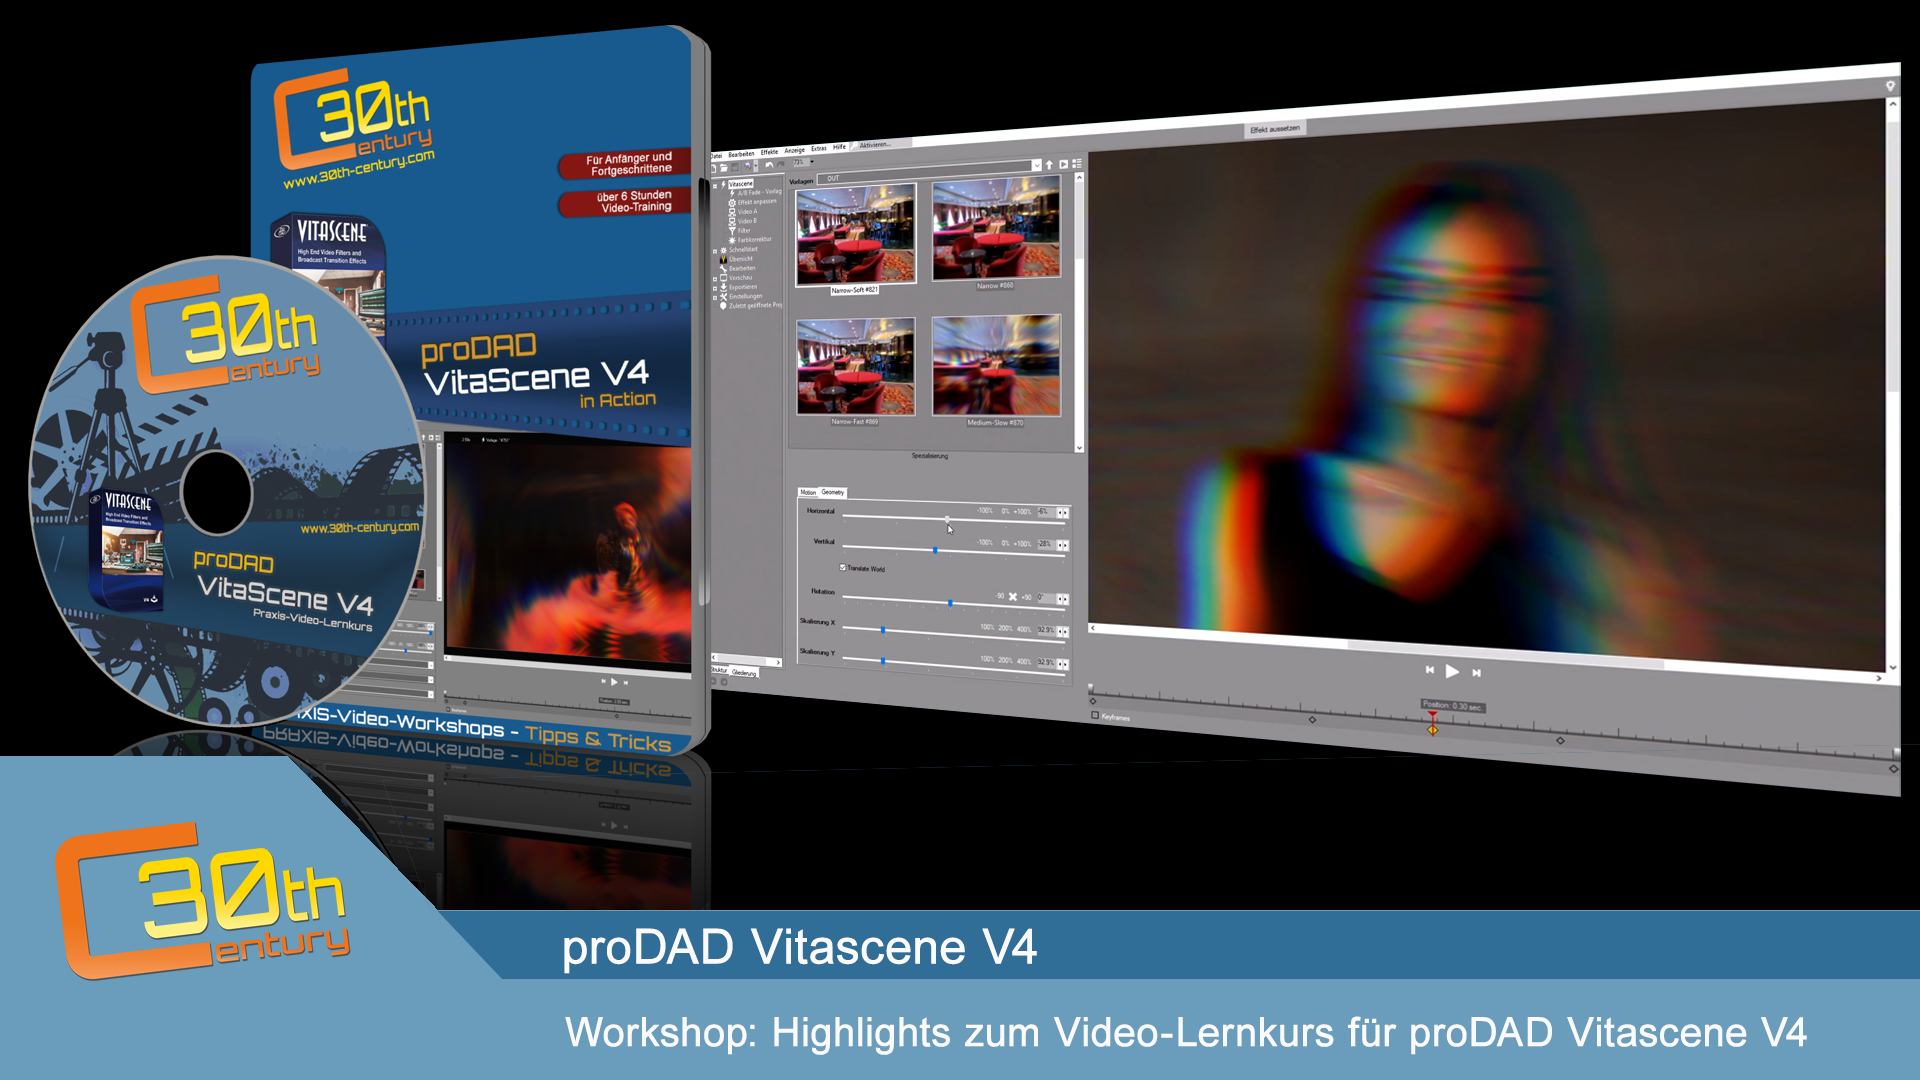 instal the new proDAD VitaScene 5.0.313